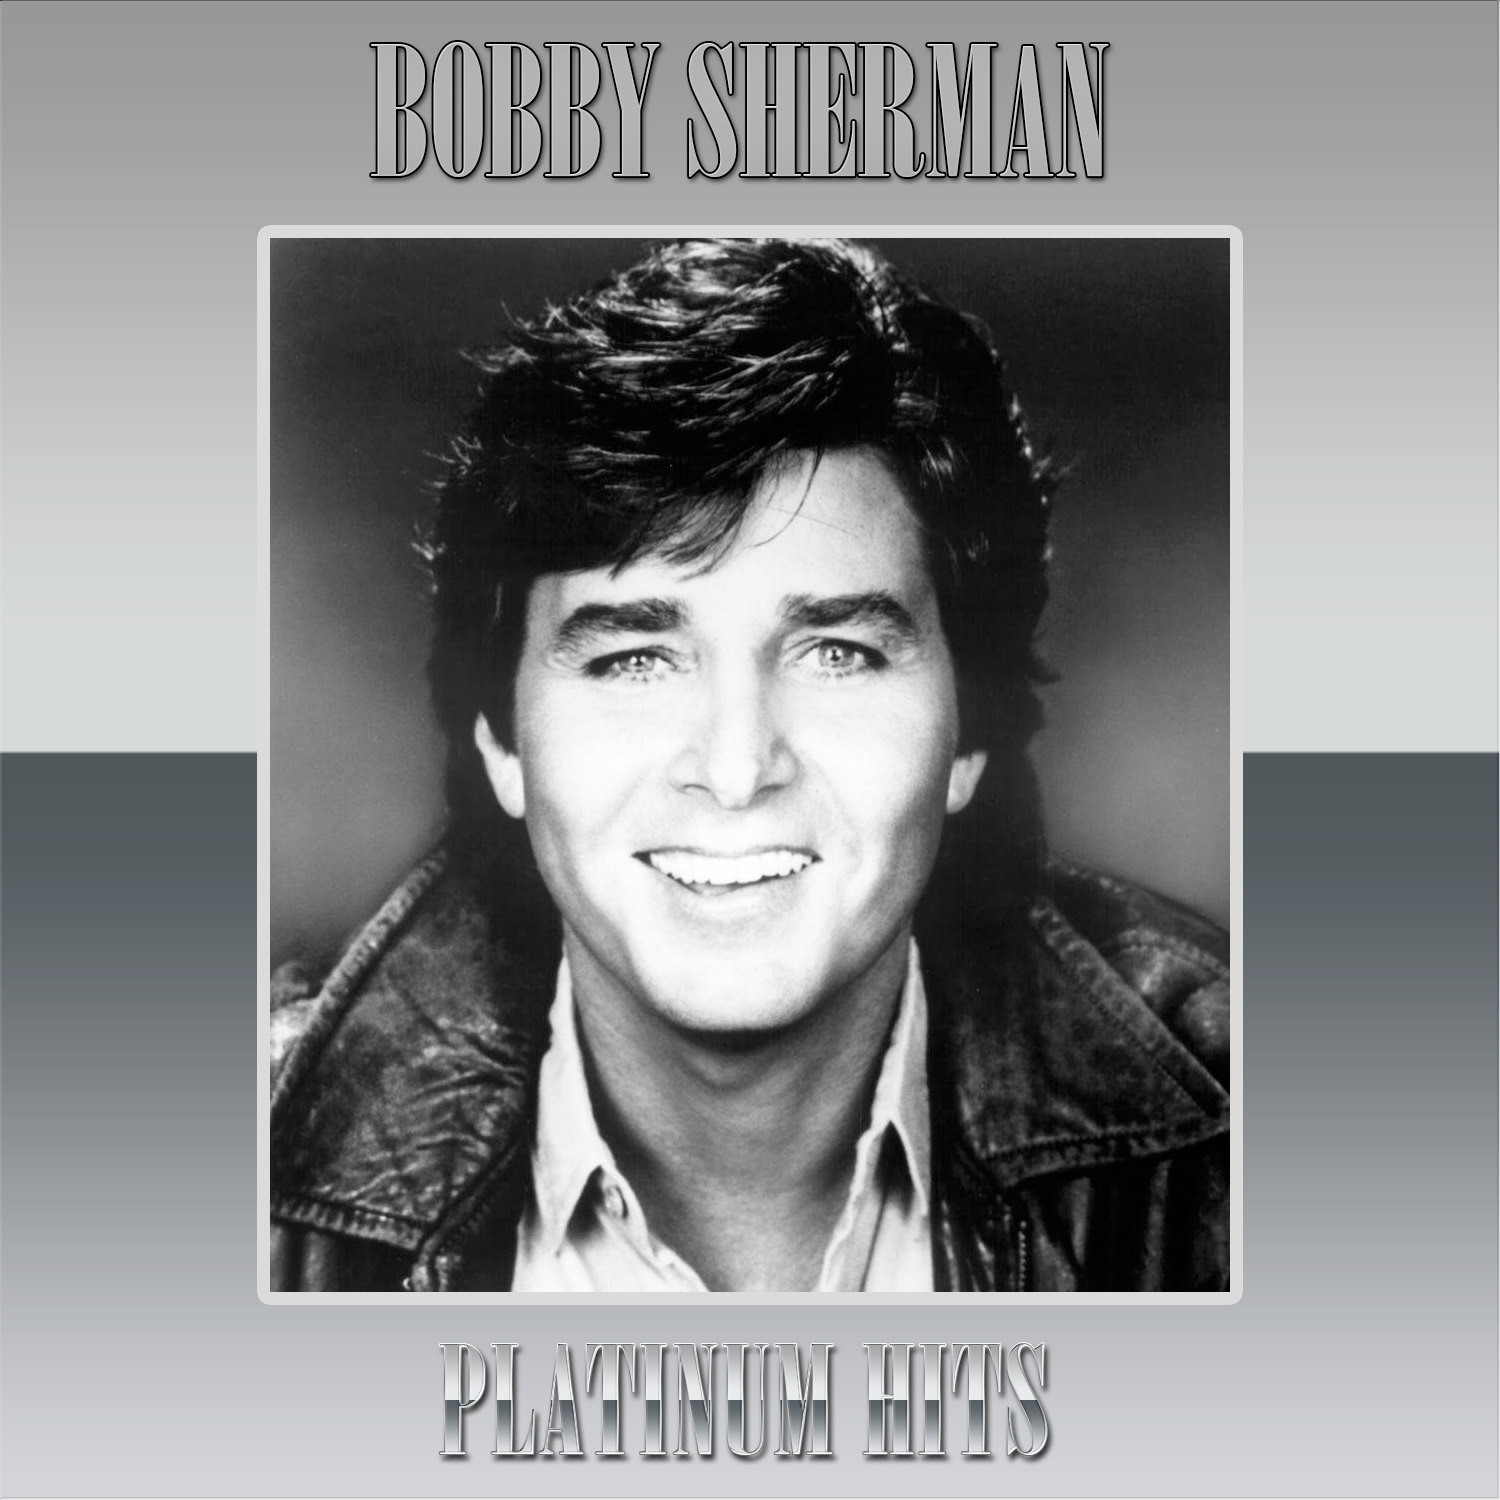 Bobby Sherman - Platinum Hits by Bobby Sherman